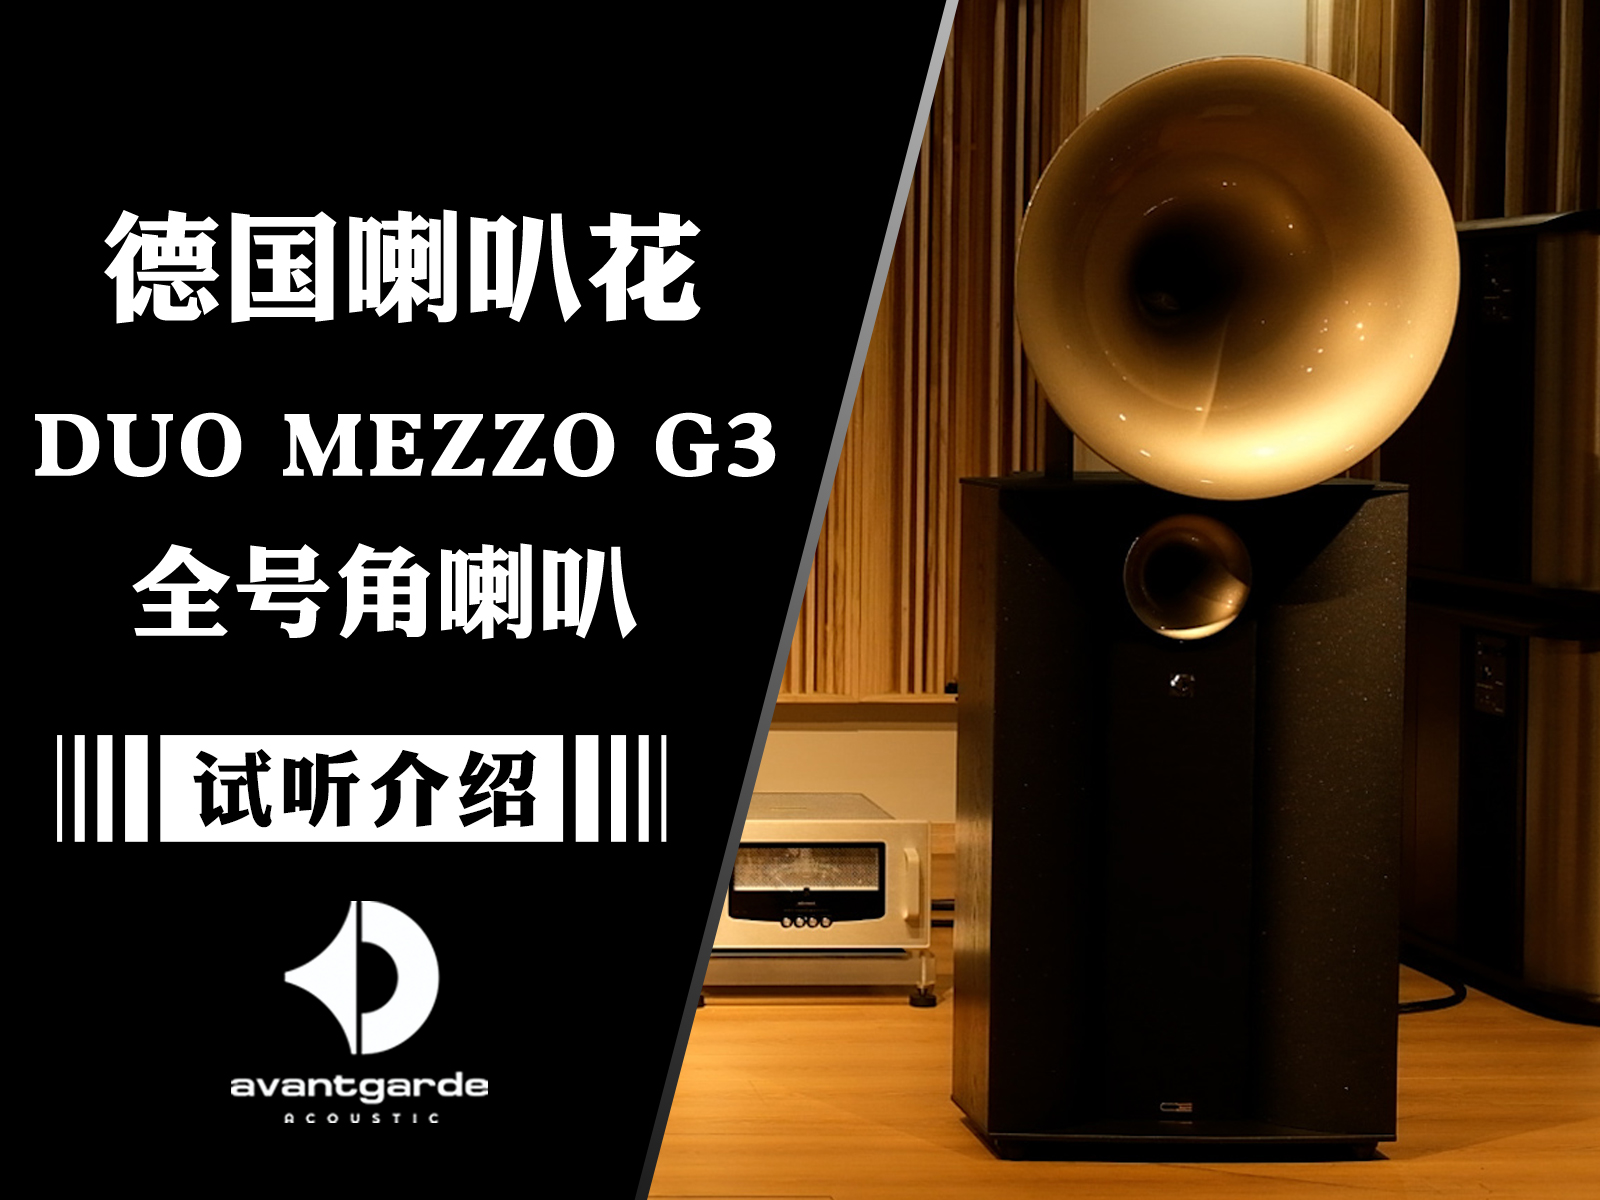 全号角的魅力——德国Avantgarde喇叭花发布全新DUO MEEZO G3全号角音箱